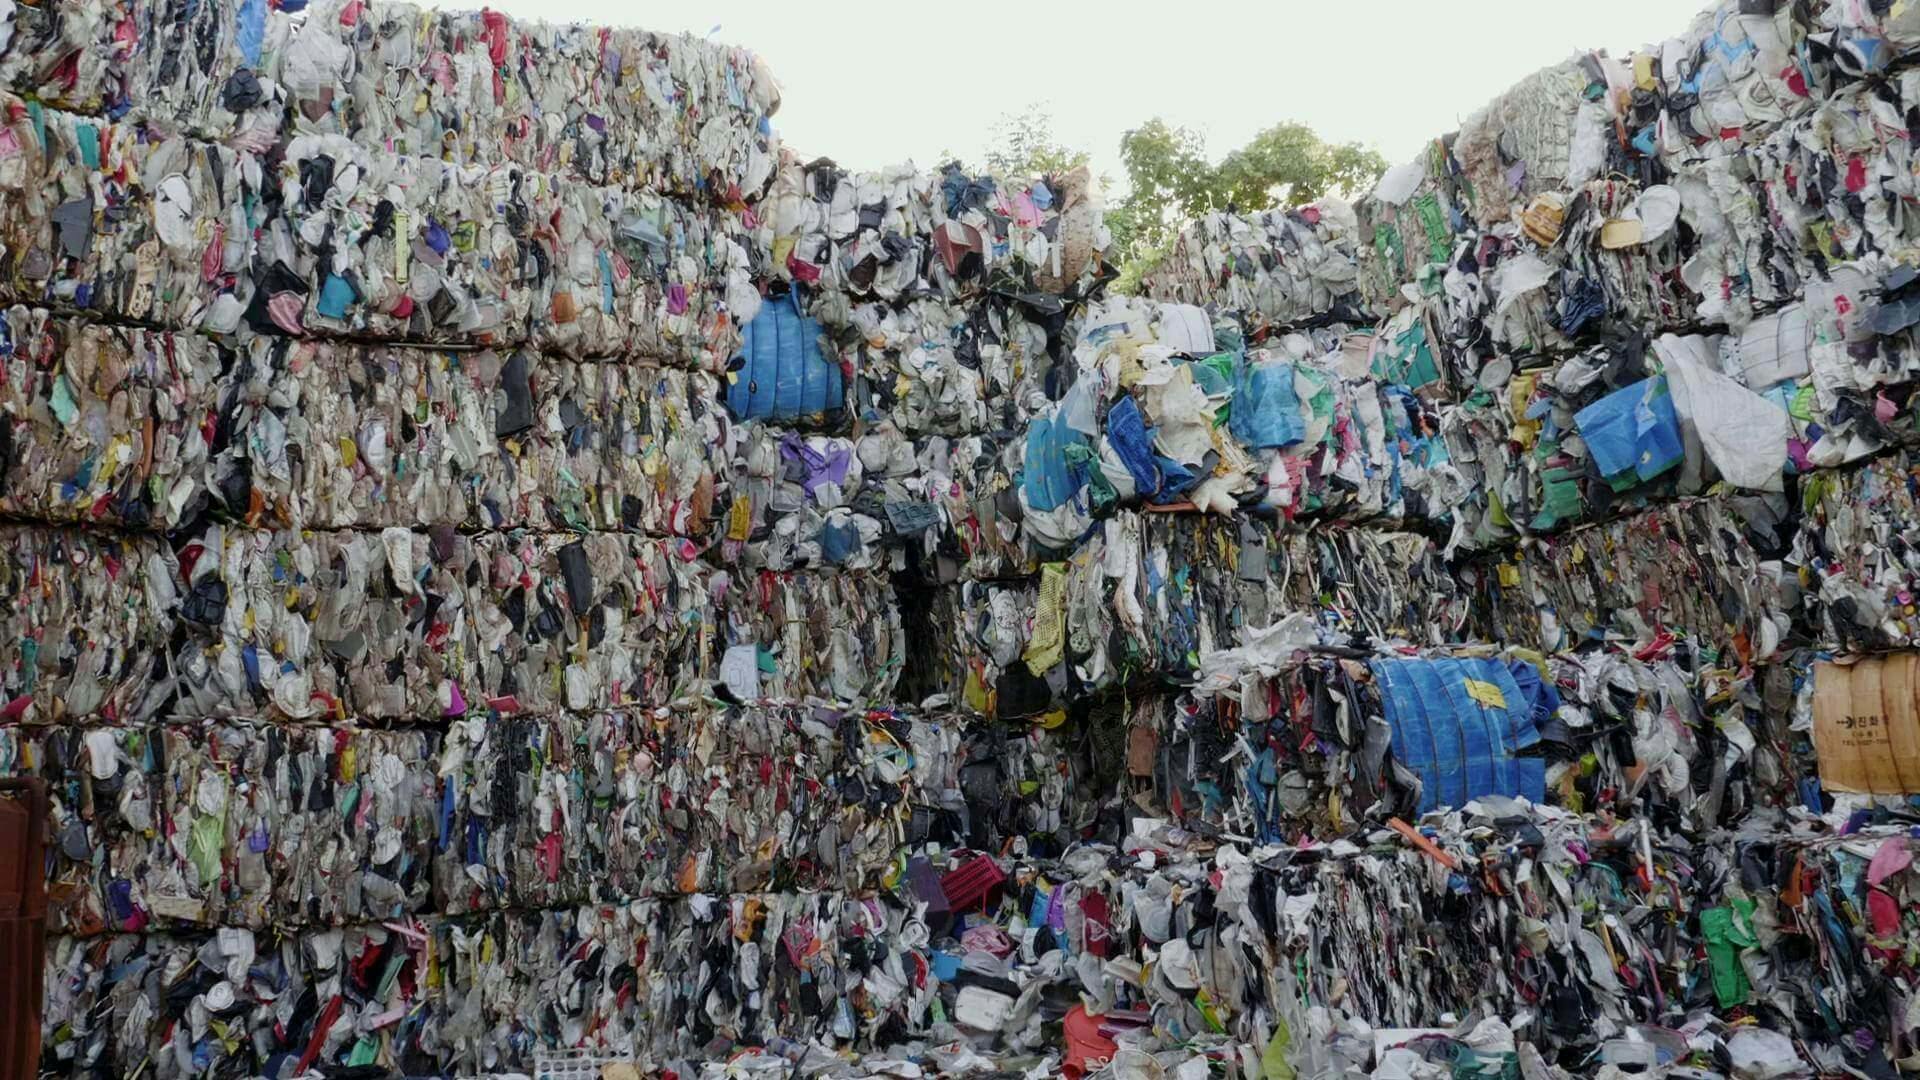 벽돌처럼 압축된 플라스틱 쓰레기가 약 5m 높이로 벽처럼 쌓여 있다.